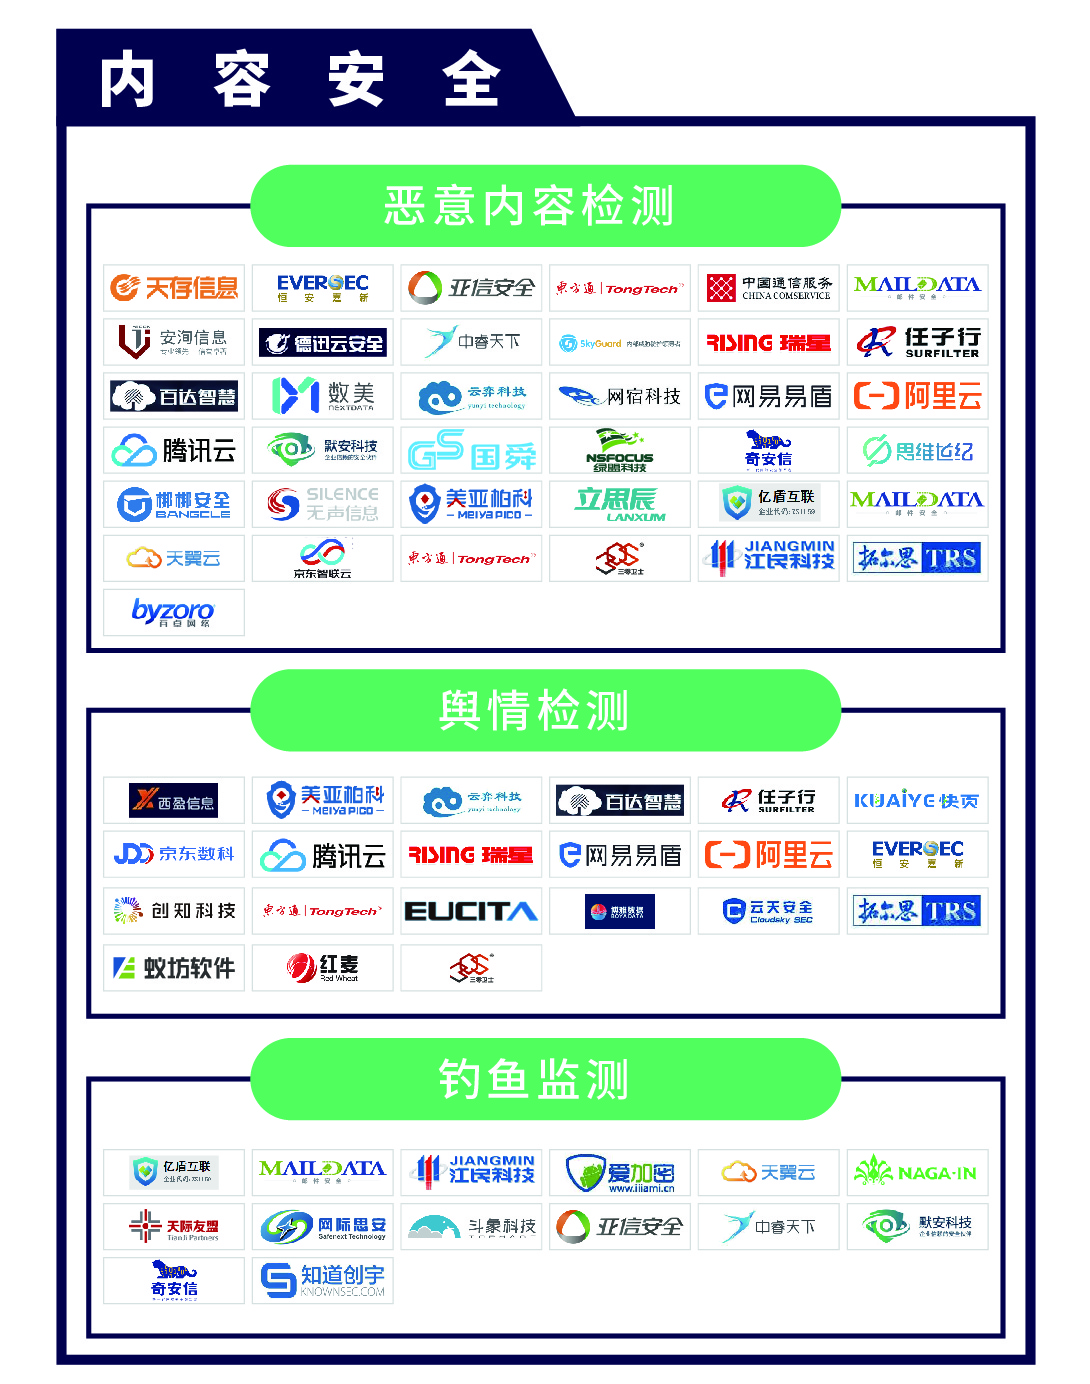 《CCSIP 2020中国网络安全产业全景图》正式发布 | FreeBuf咨询-第9张图片-网盾网络安全培训